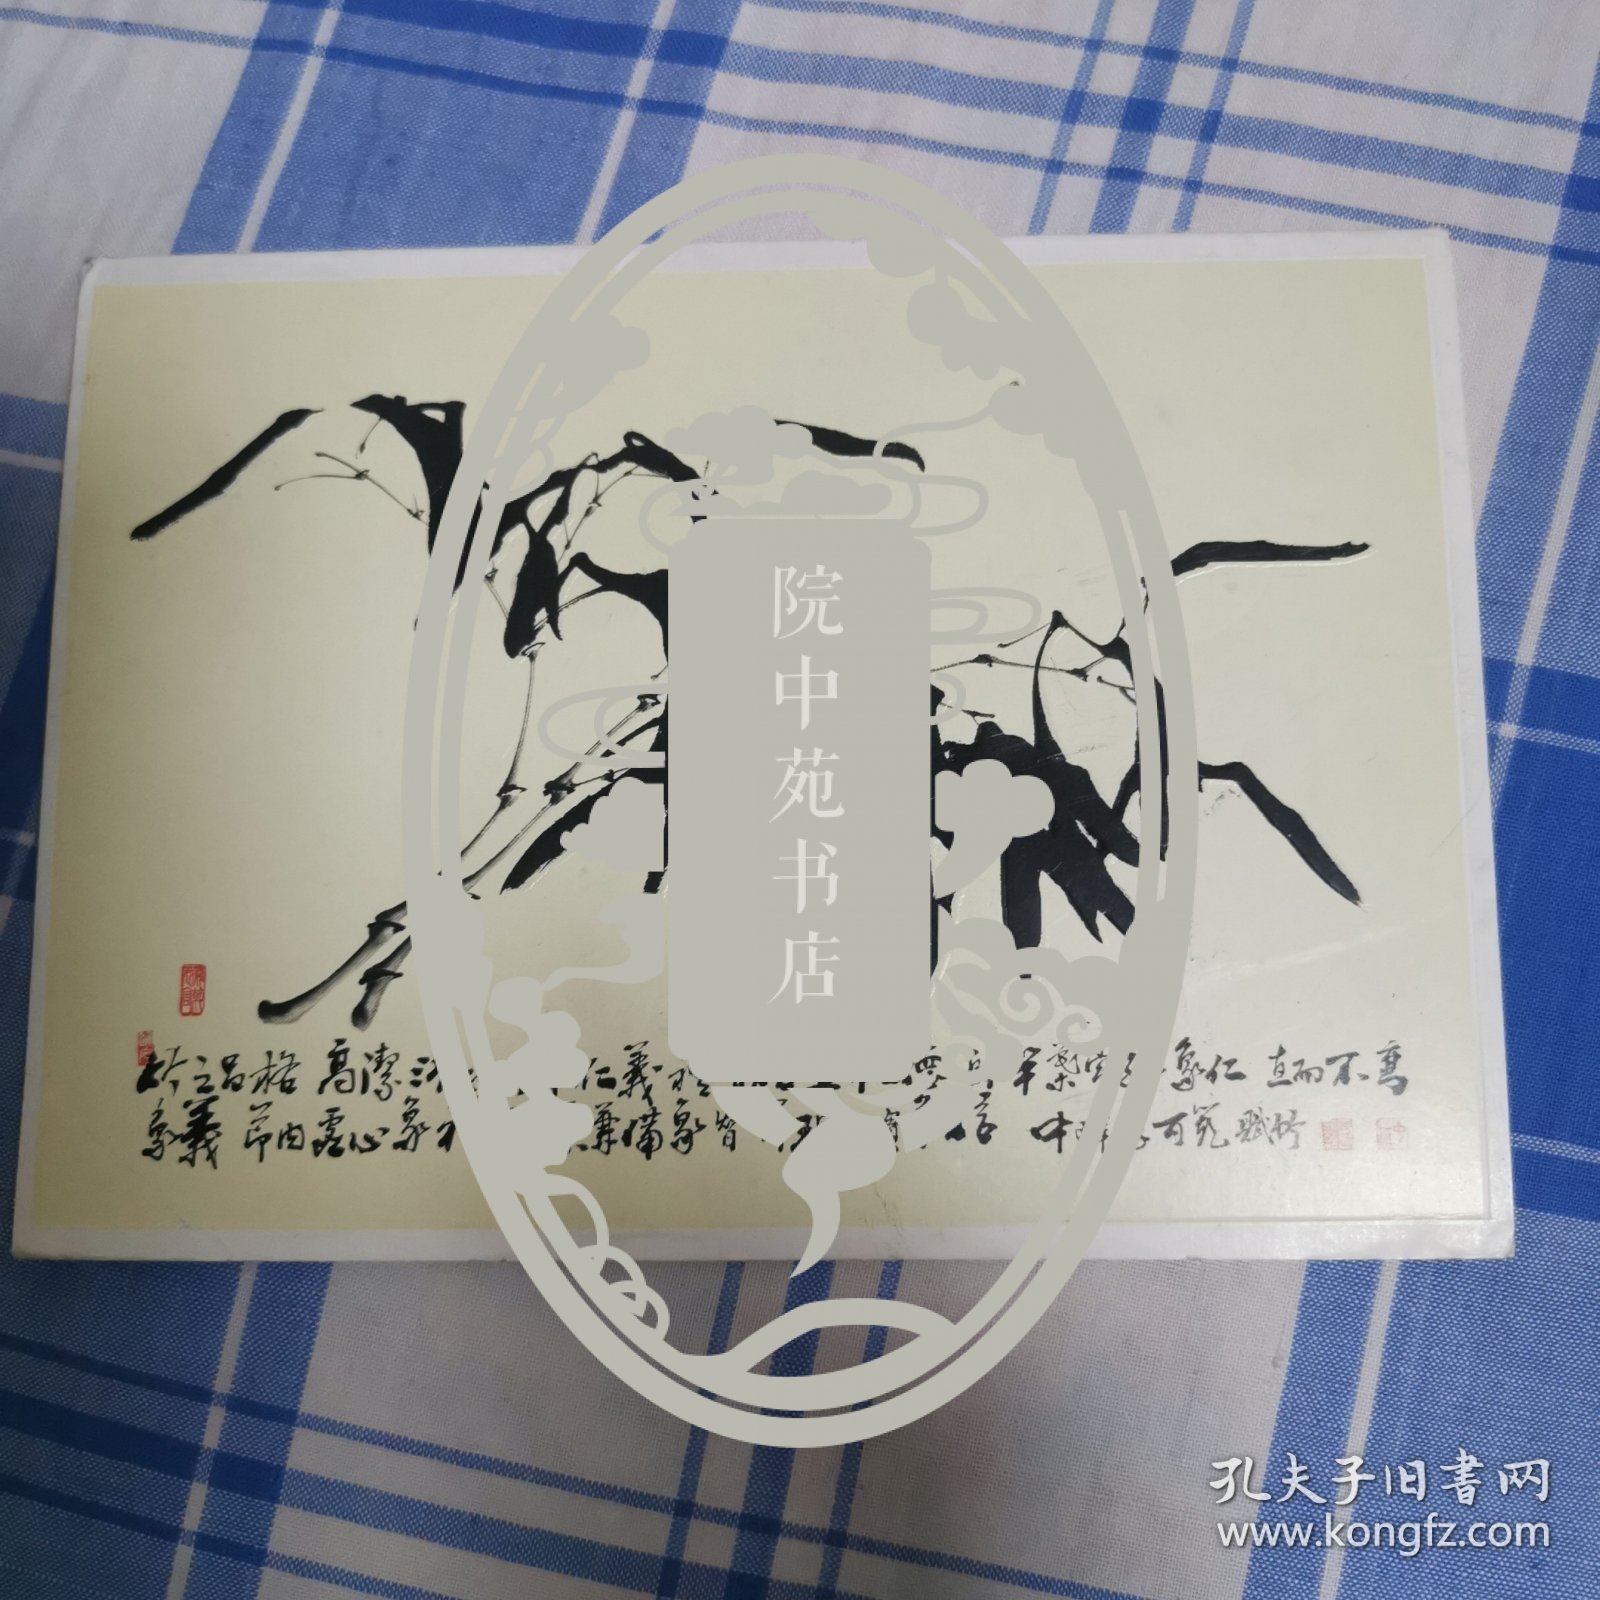 韩国书画艺术联合会副会长李可范设计的“迎二千年纪元”贺年卡。李可范毛笔书写